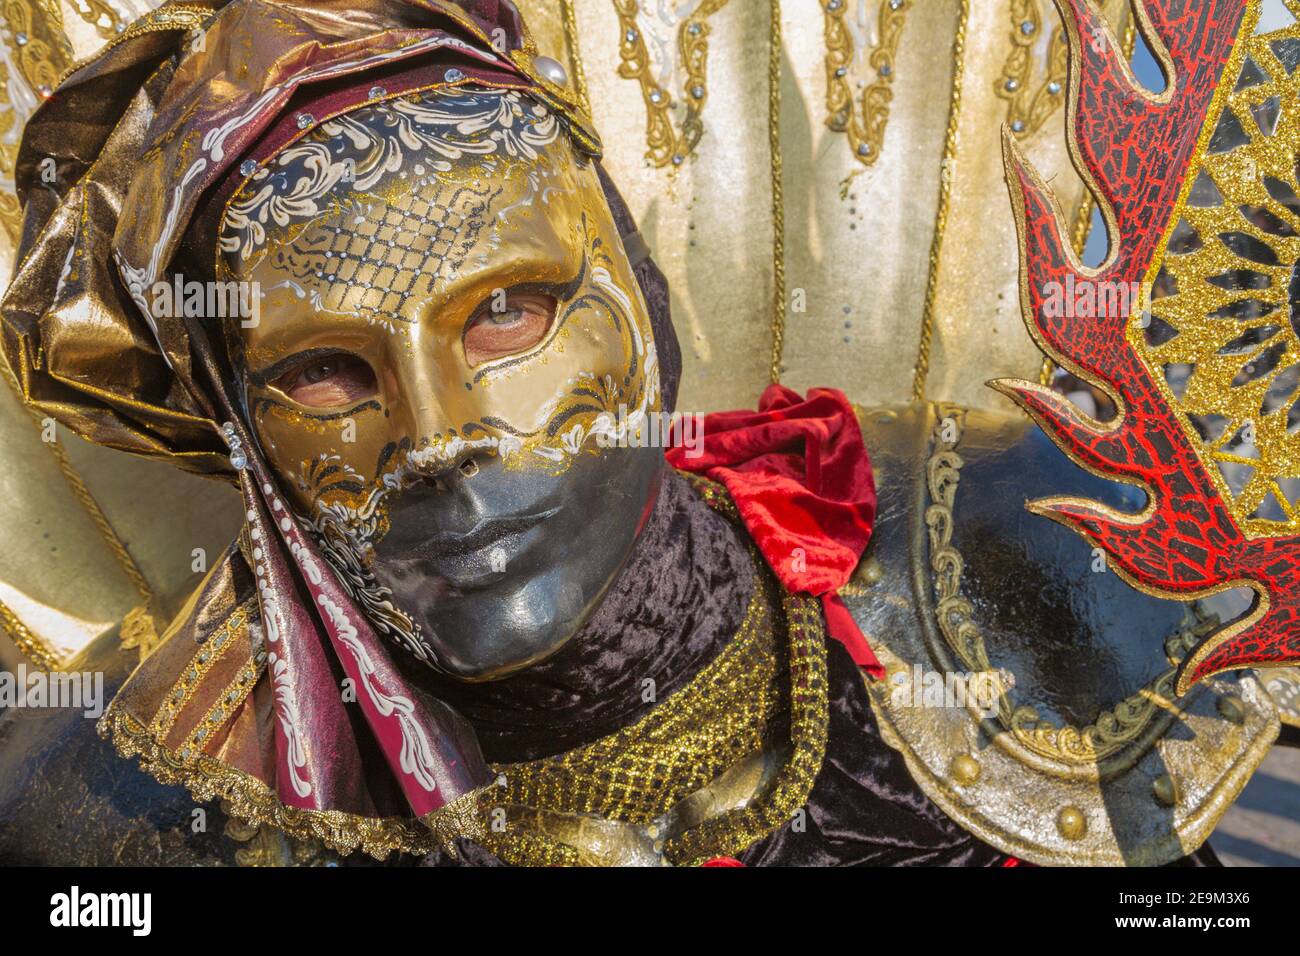 Venise, Italie - 26 février 2011 : Carnaval de masque de luxe Banque D'Images